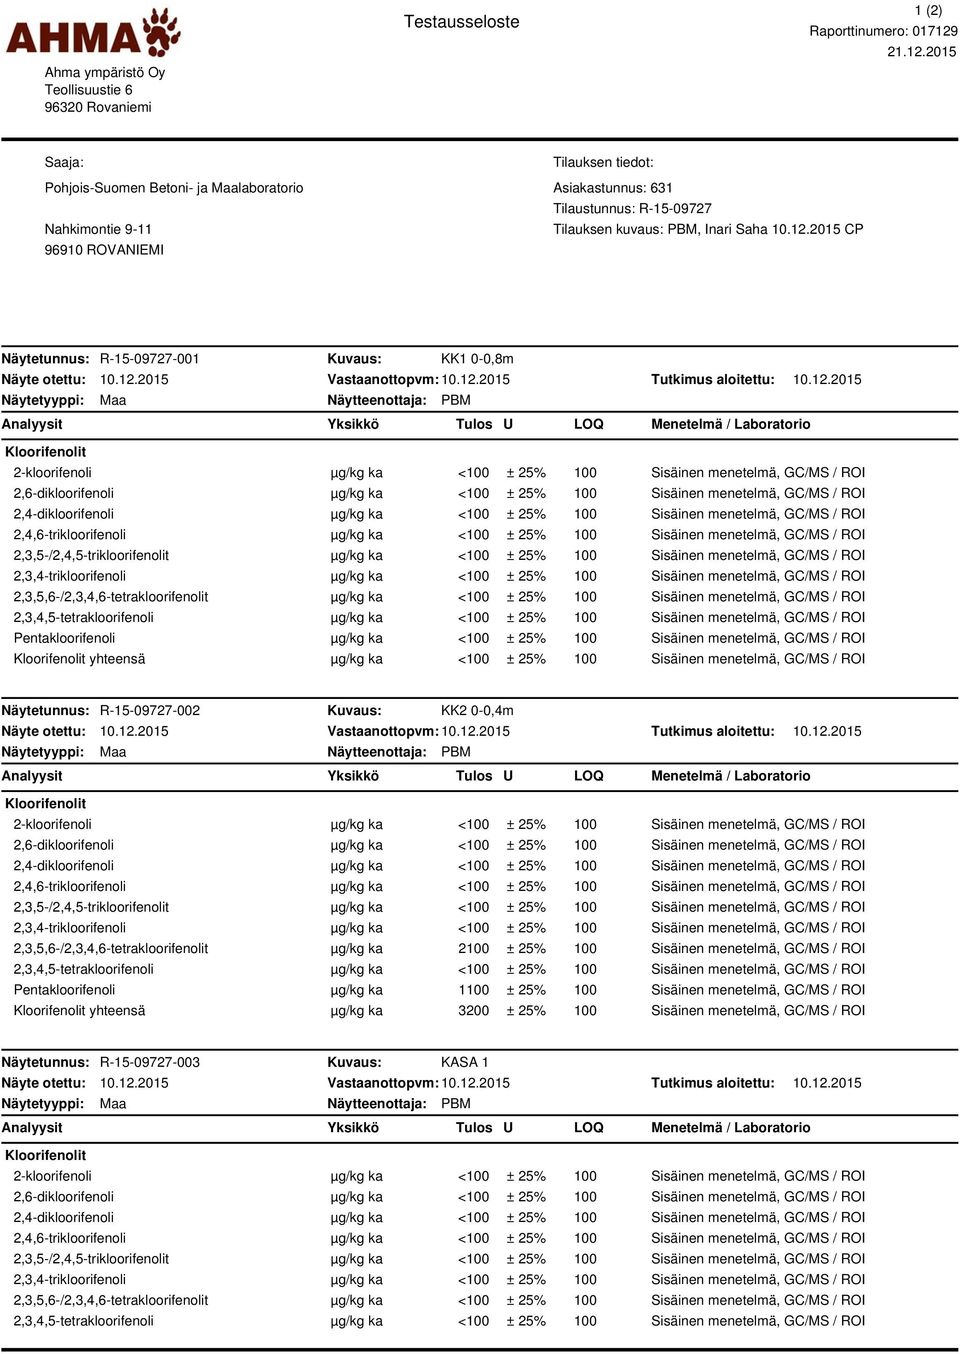 2015 Saaja: Pohjois-Suomen Betoni- ja laboratorio Nahkimontie 9-11 Tilauksen tiedot: Asiakastunnus: 631 Tilaustunnus: R-15-09727 Tilauksen